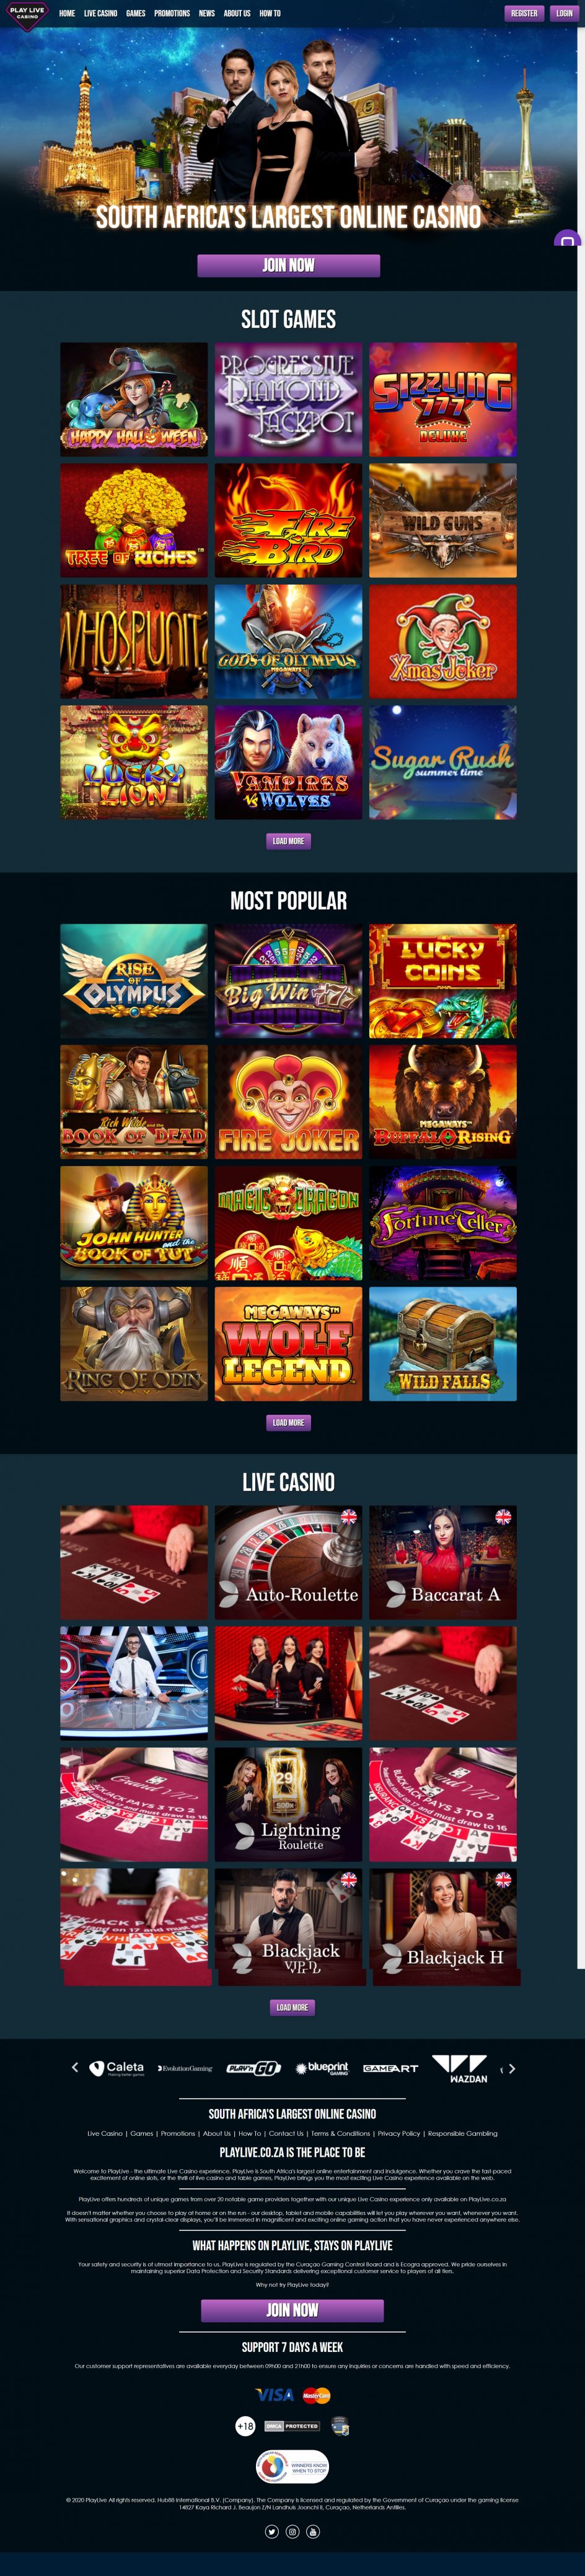 PlayLive Casino Design